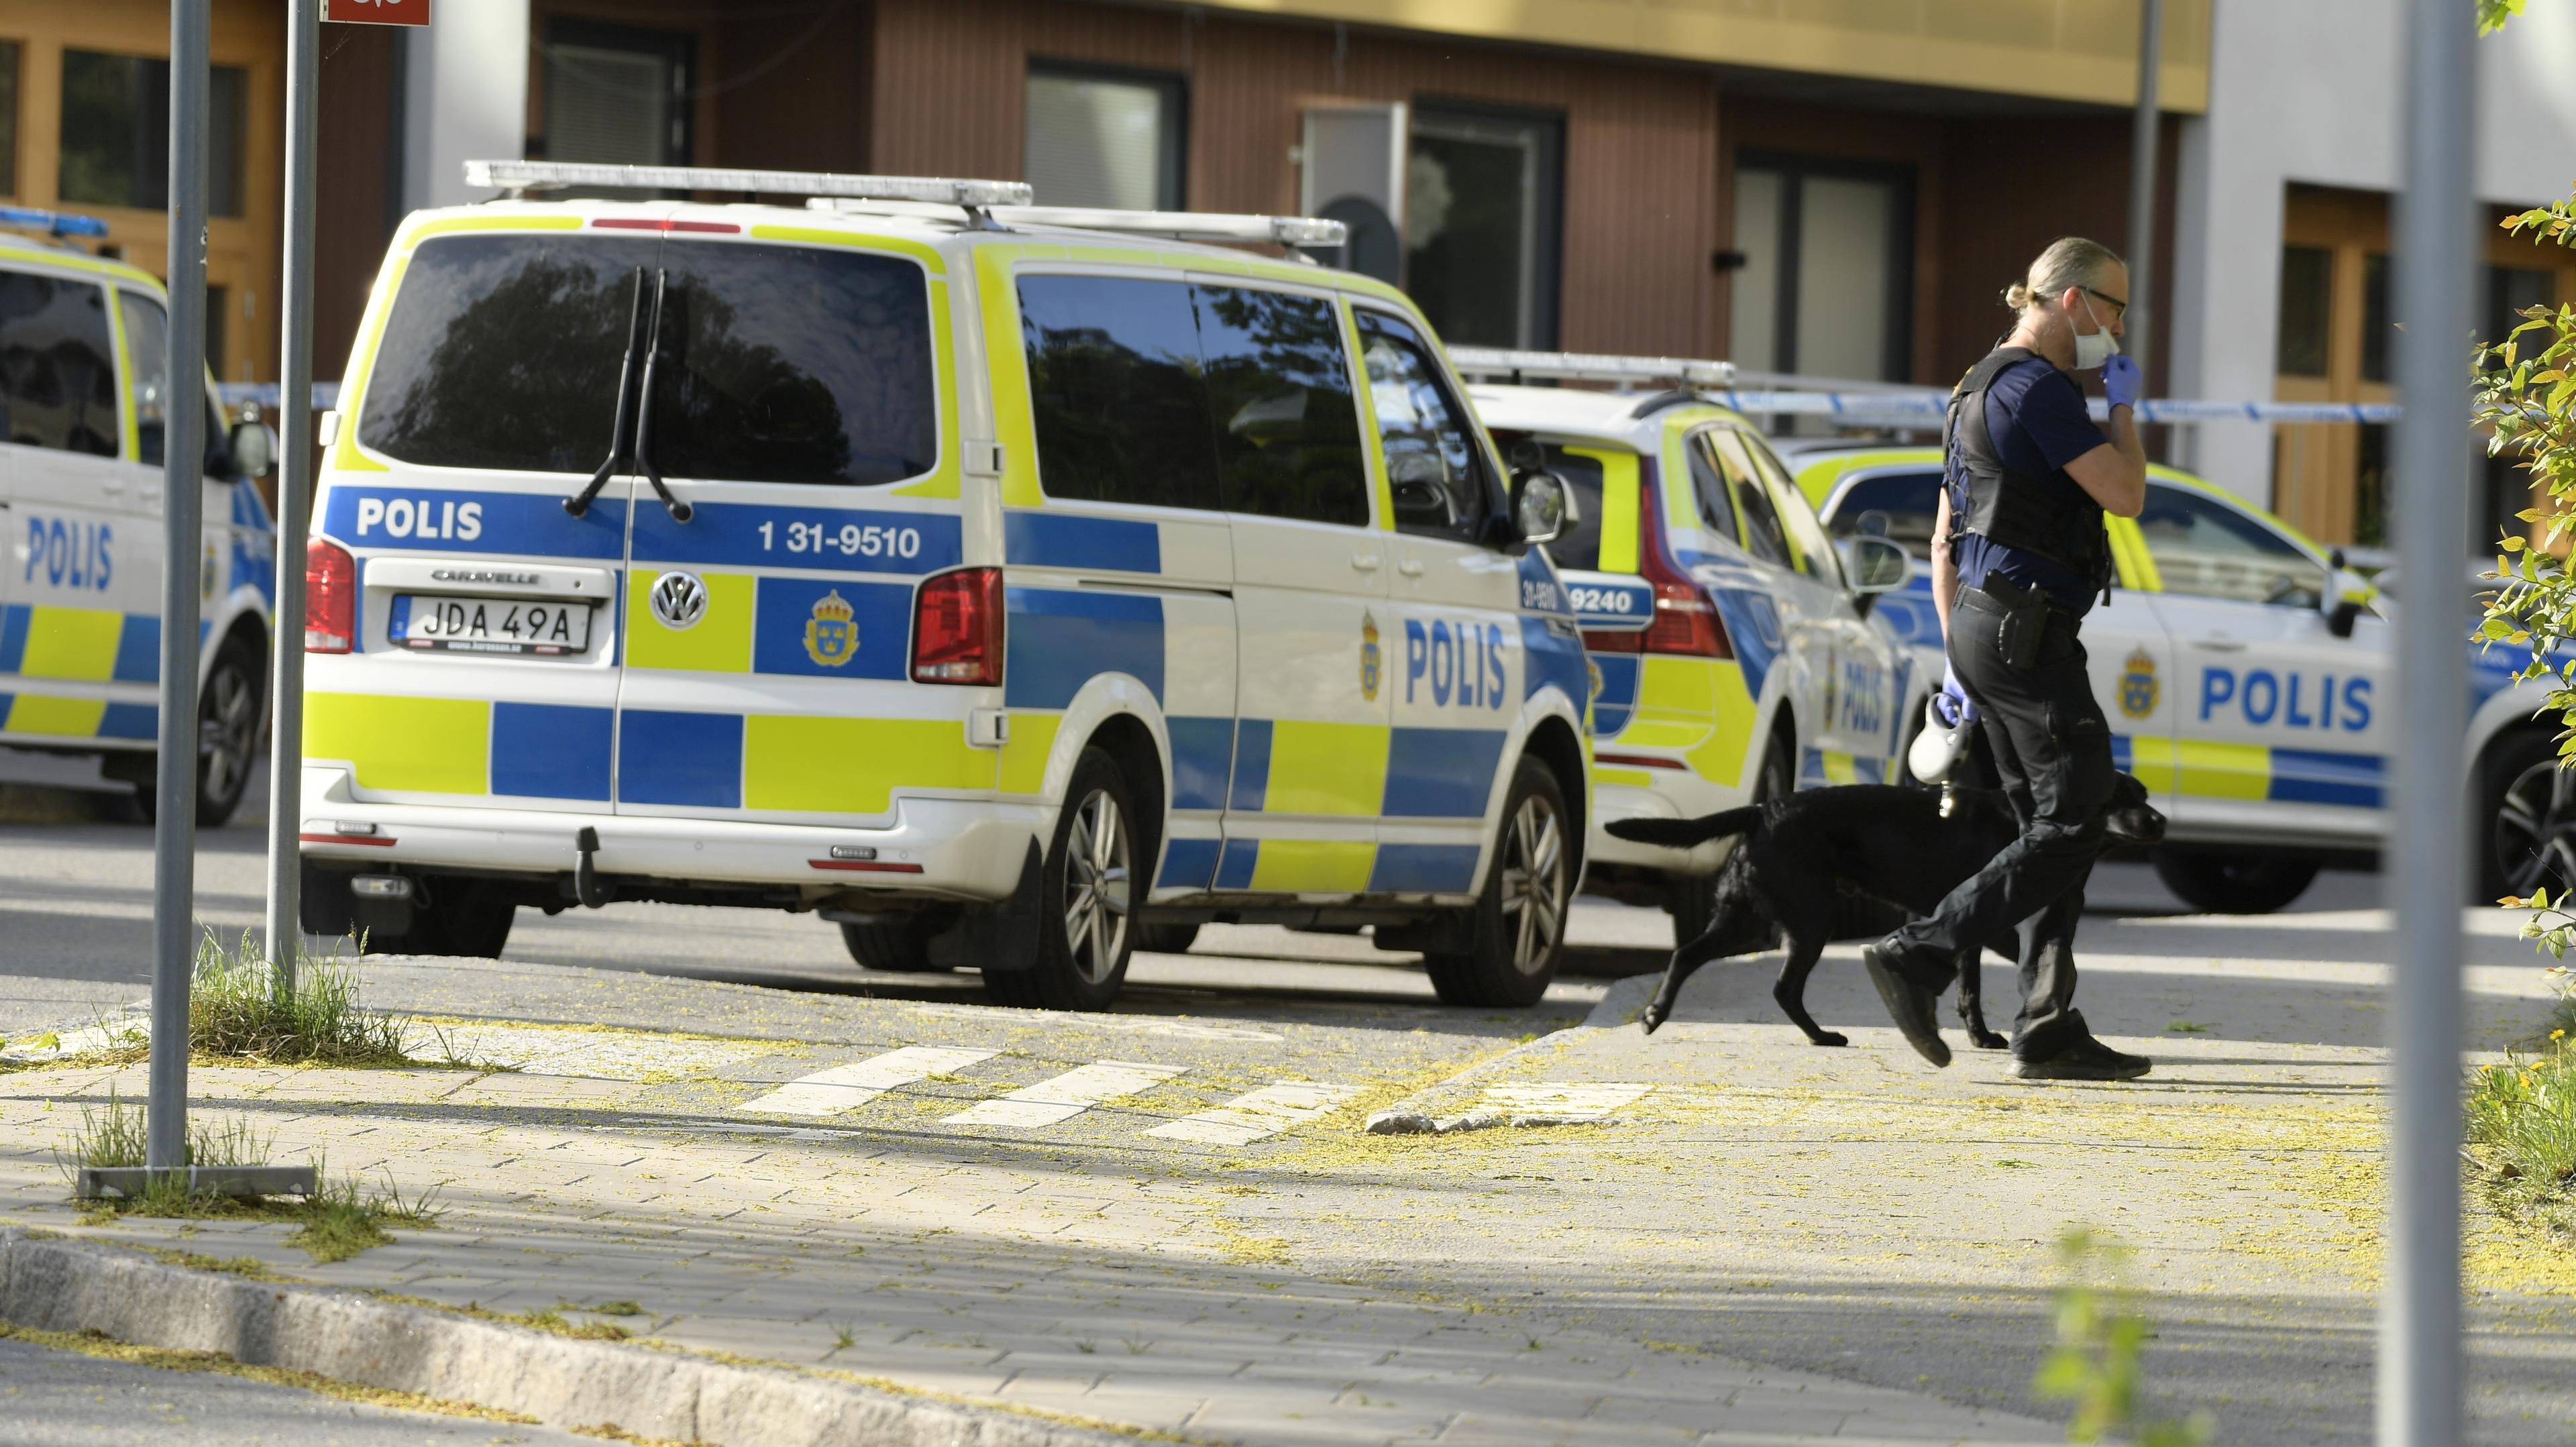 Polis på plats under måndagen efter mordet i Bredäng i södra Stockholm. Foto: Oscar Olsson/TT